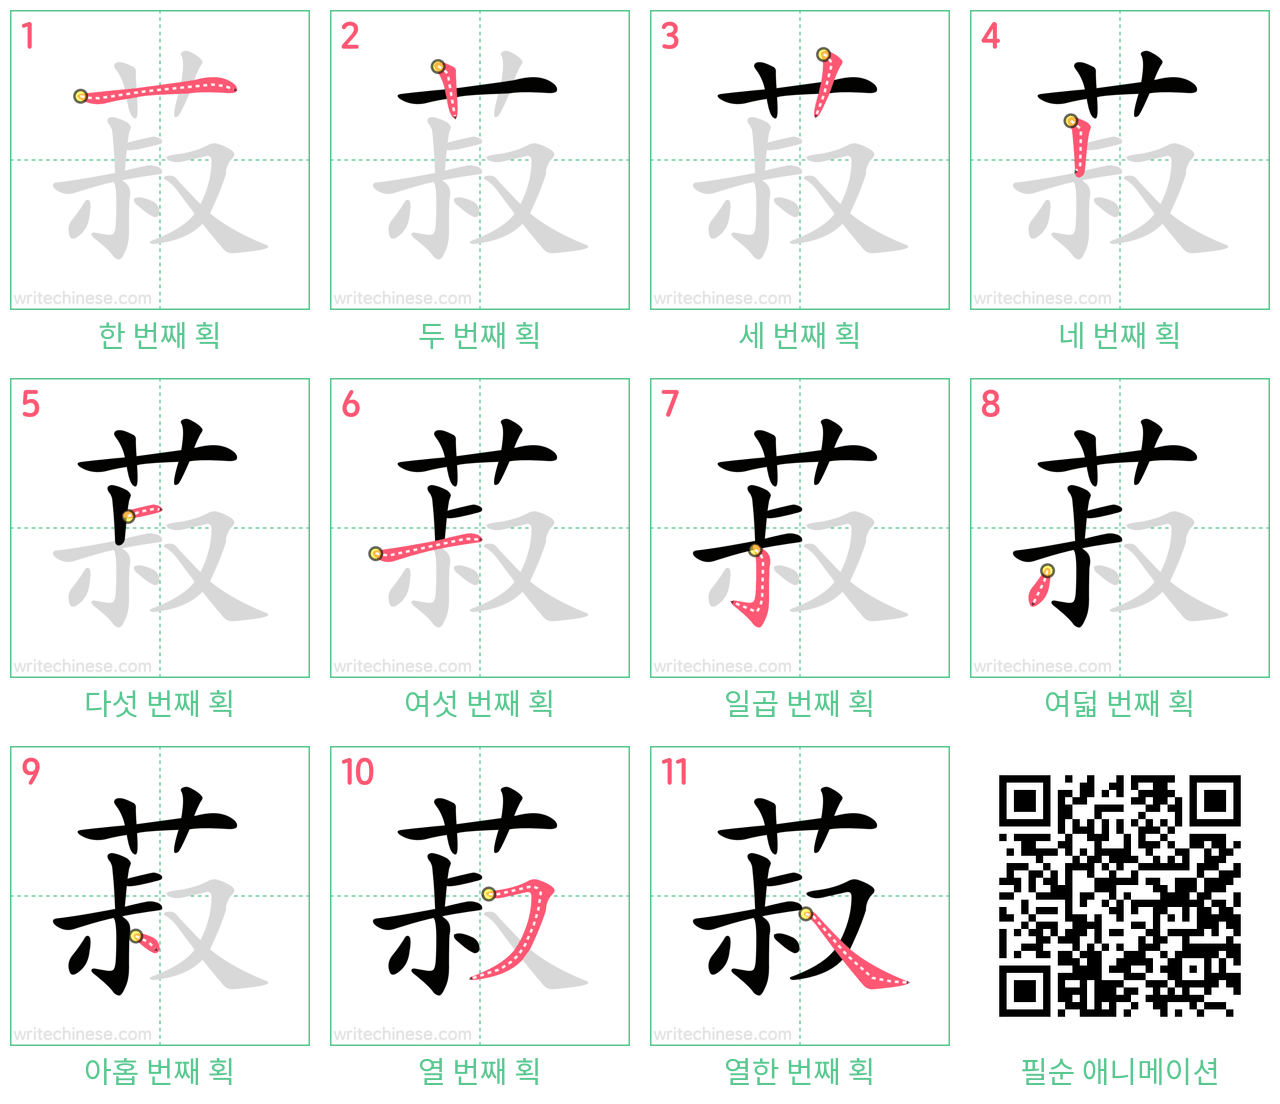 菽 step-by-step stroke order diagrams